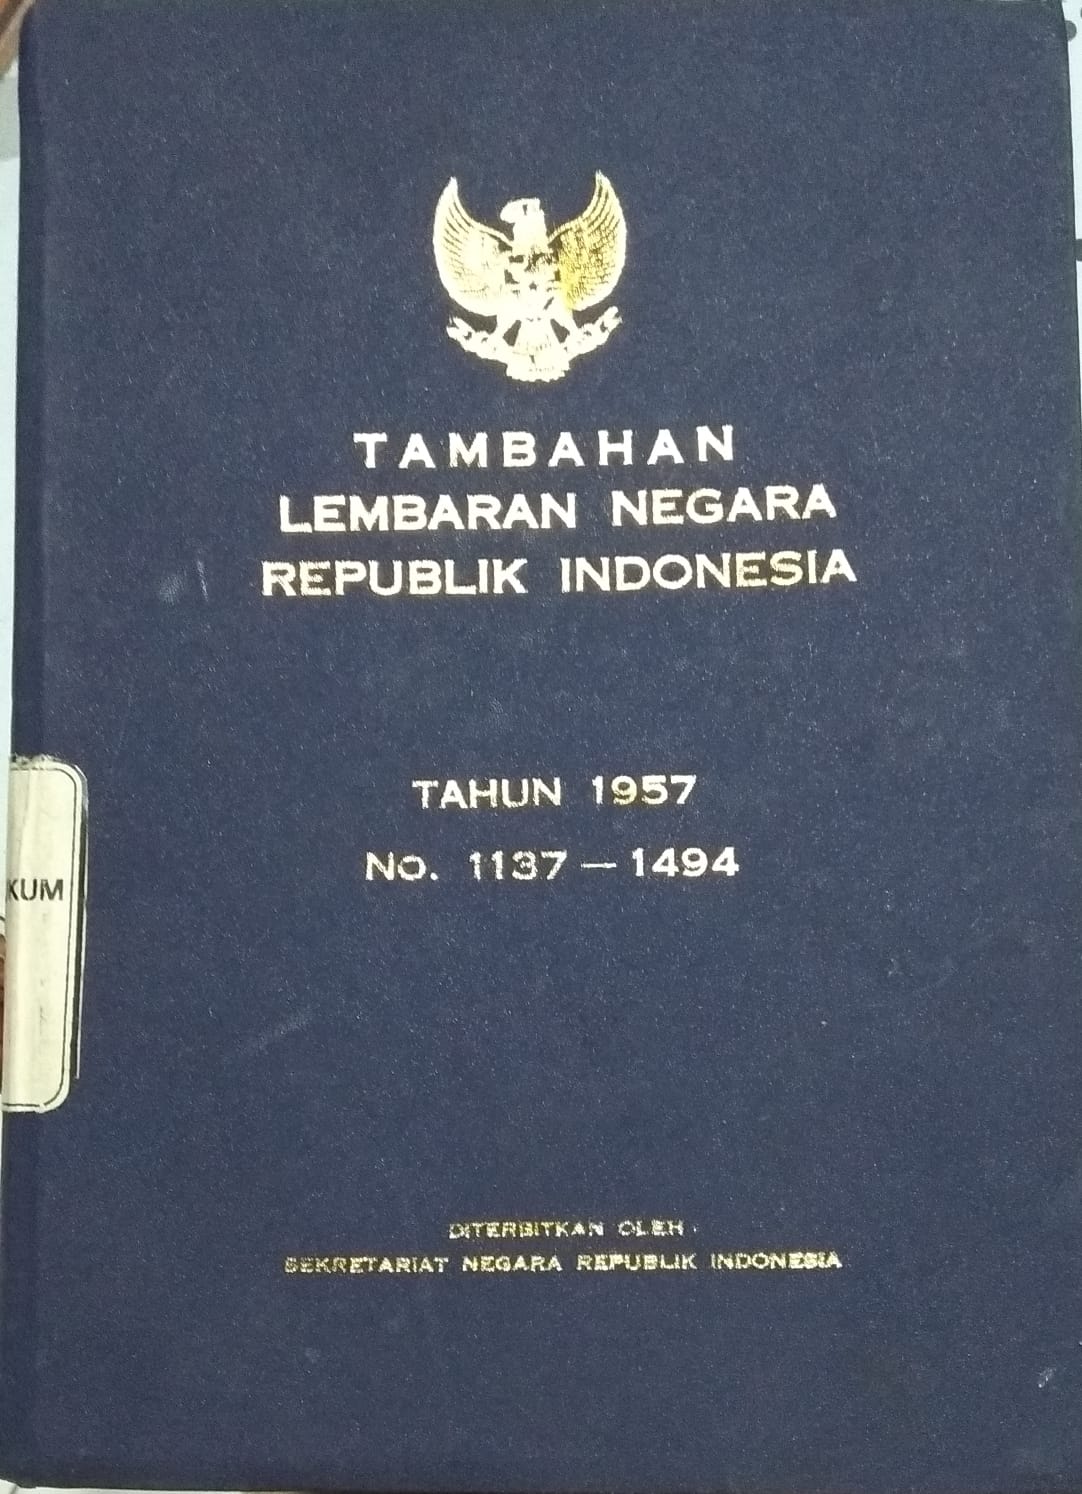 TAMBAHAN LEMBARAN NEGARA REPUBLIK INDONESIA TAHUN 1957 NO. 1137-1494